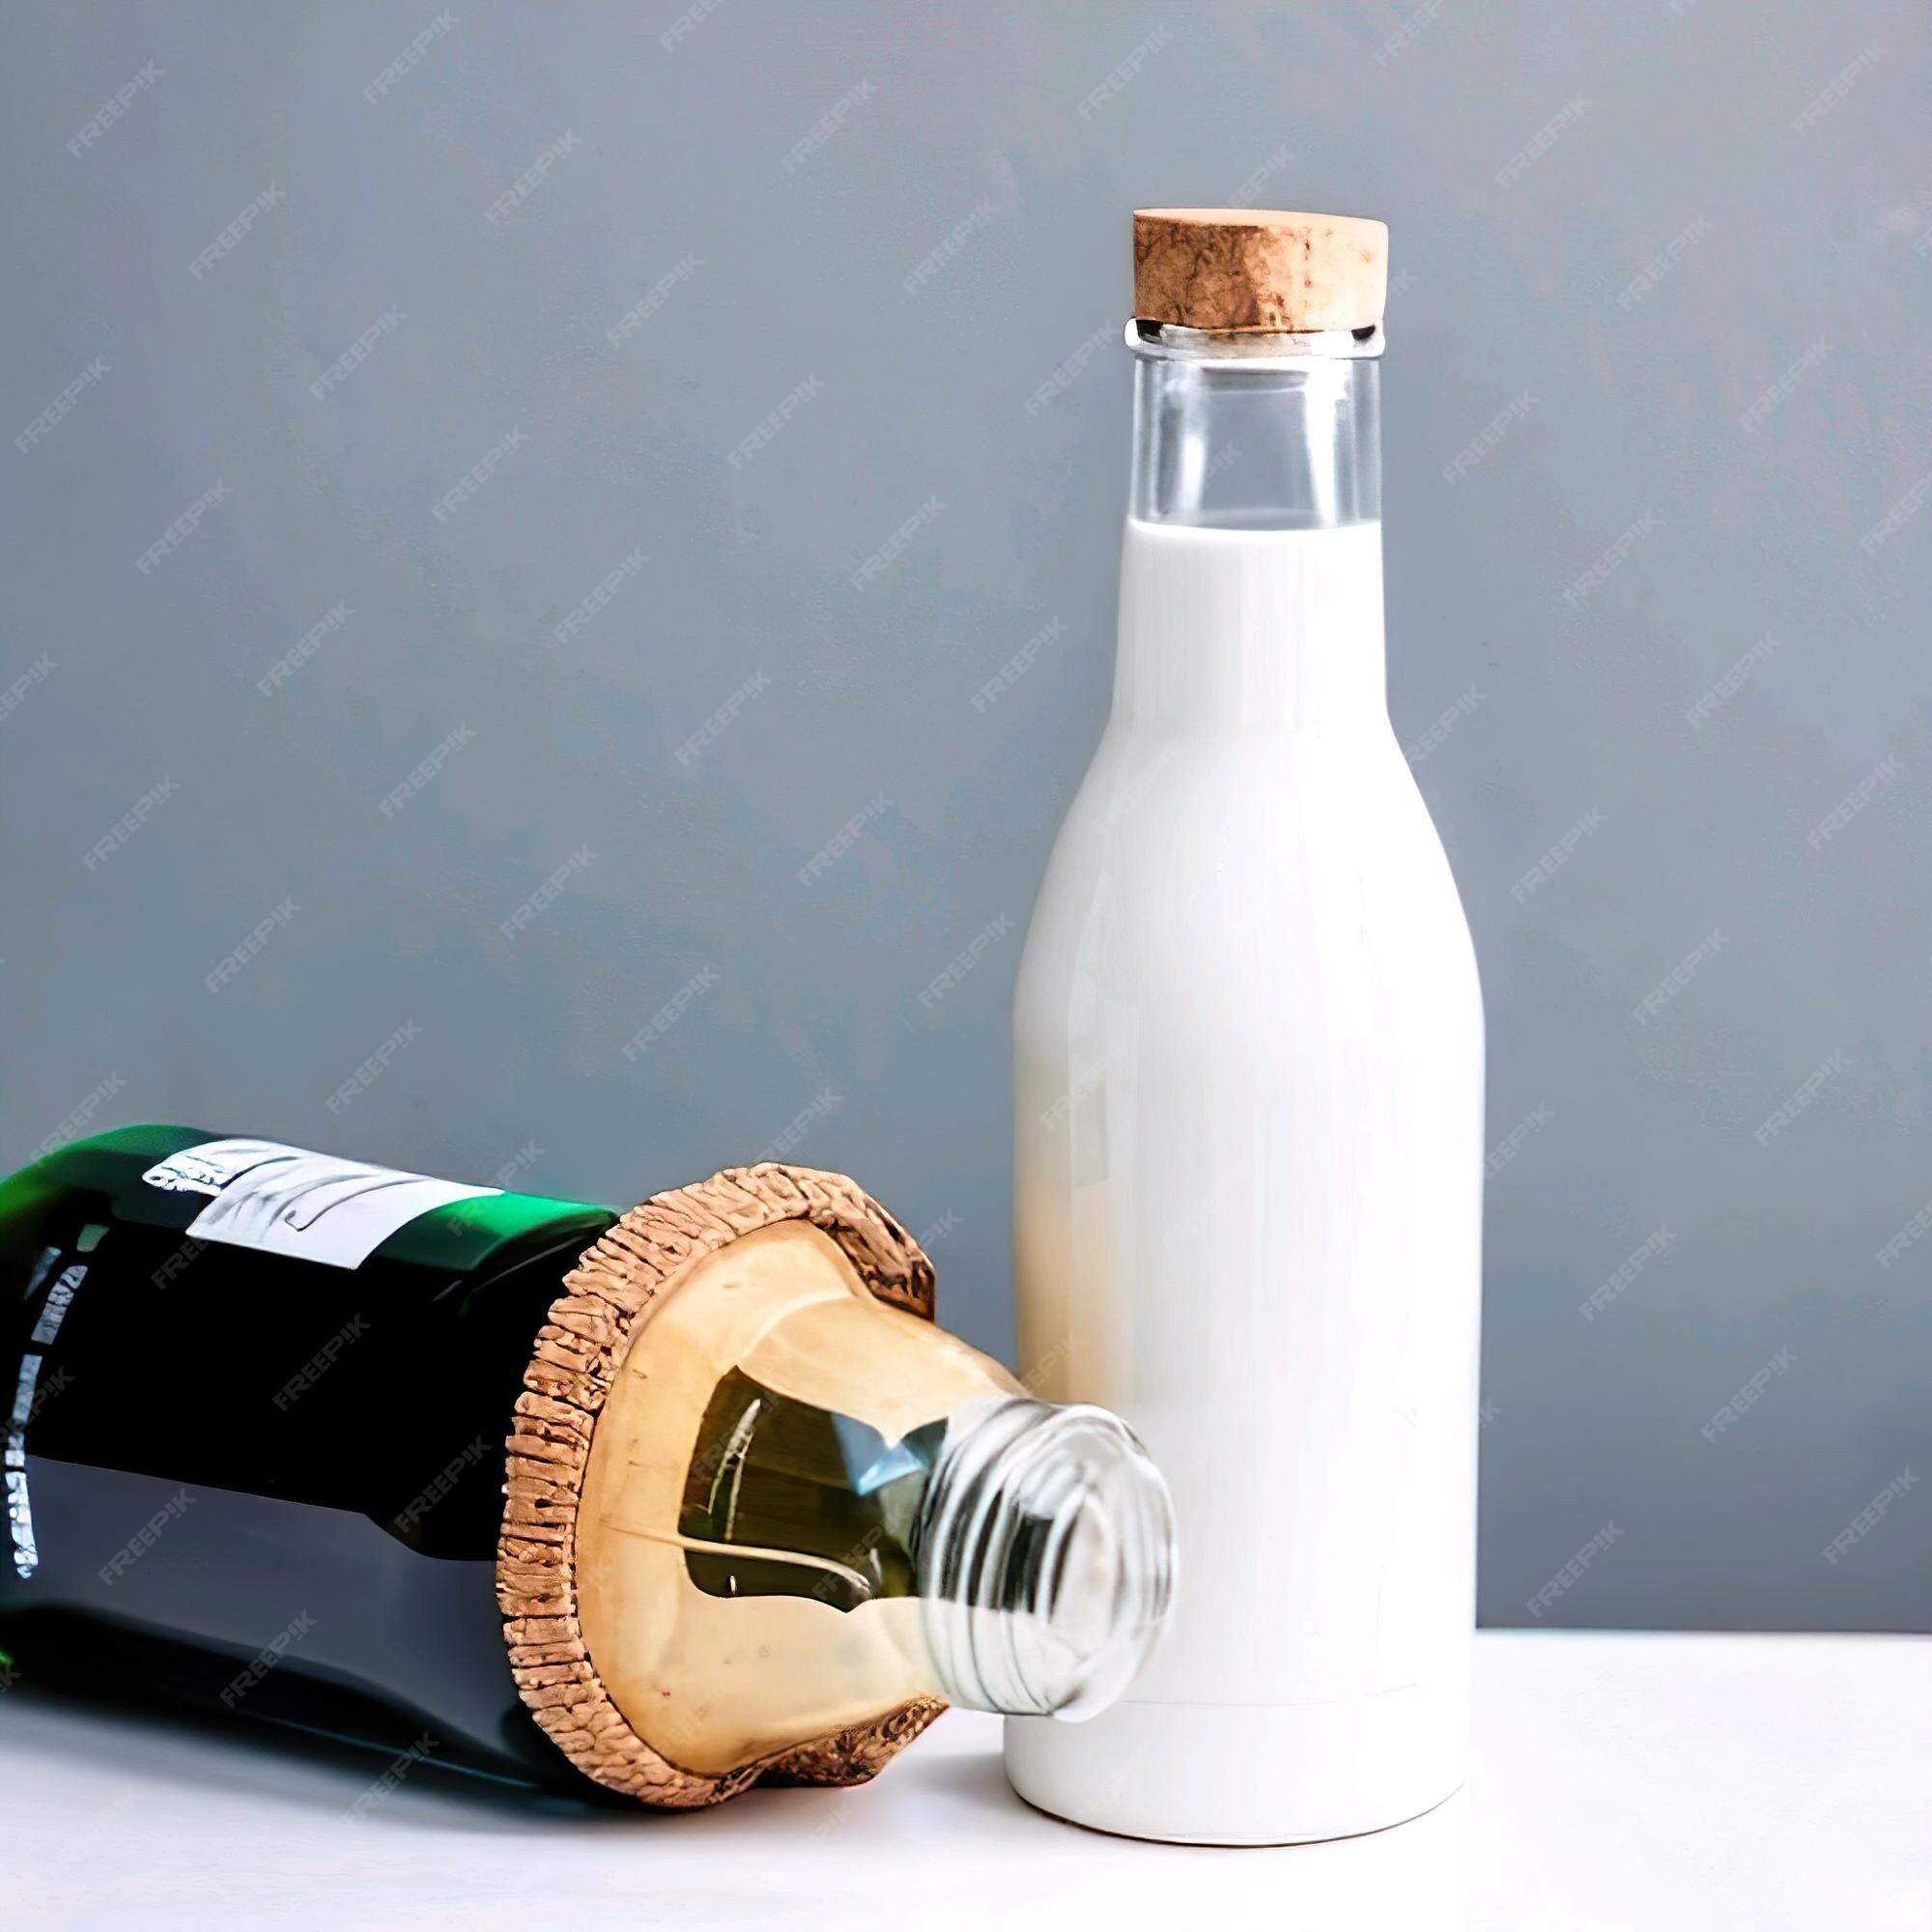 op gang brengen Brood identificatie Een fles wijn met een kurk erin en een fles witte wijn. | Premium Foto